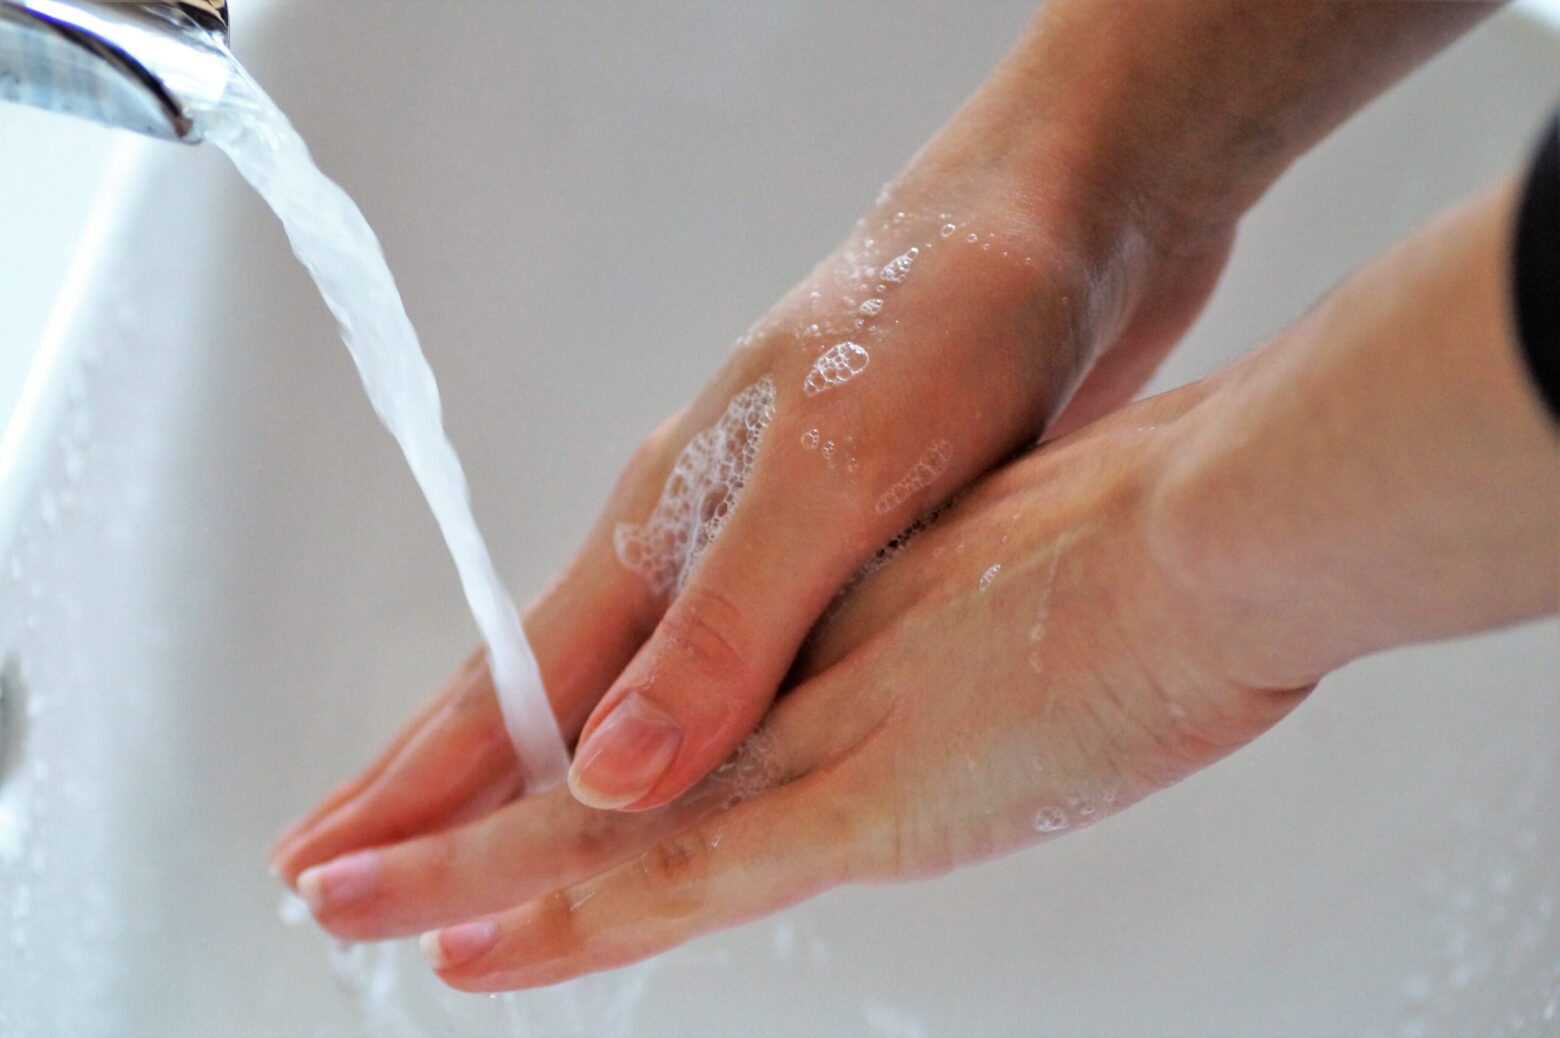 Мыть руки с мылом надо не менее 20 секунд.